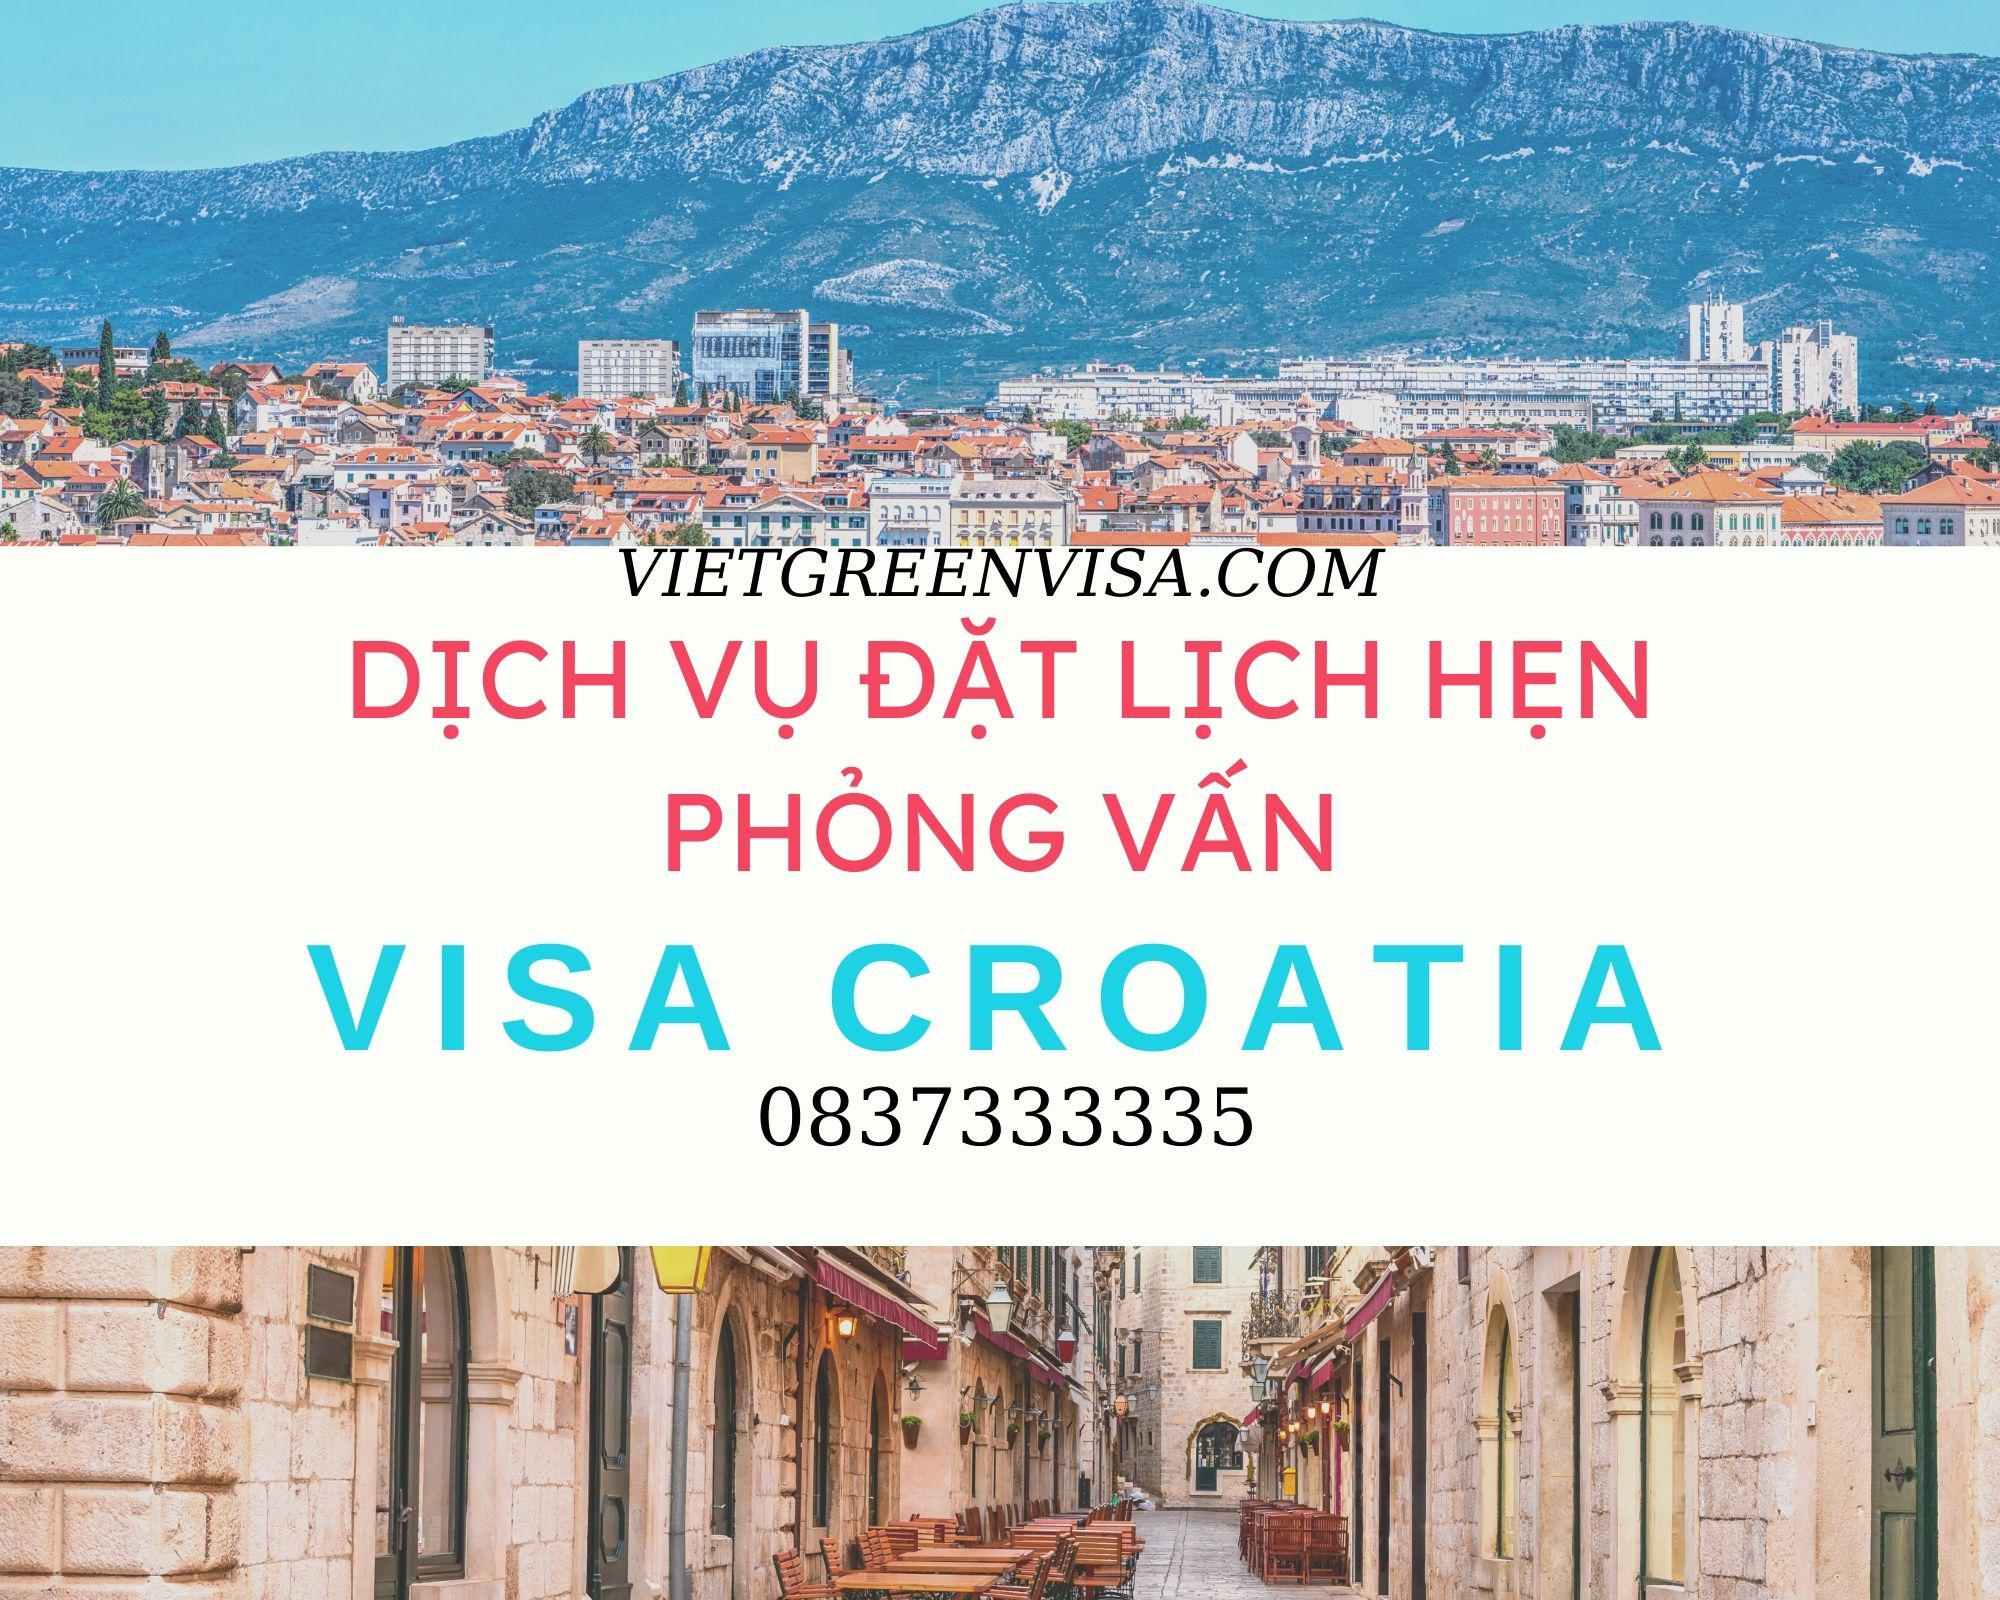 Hỗ trợ đặt lịch hẹn phỏng vấn xin visa Croatia uy tín